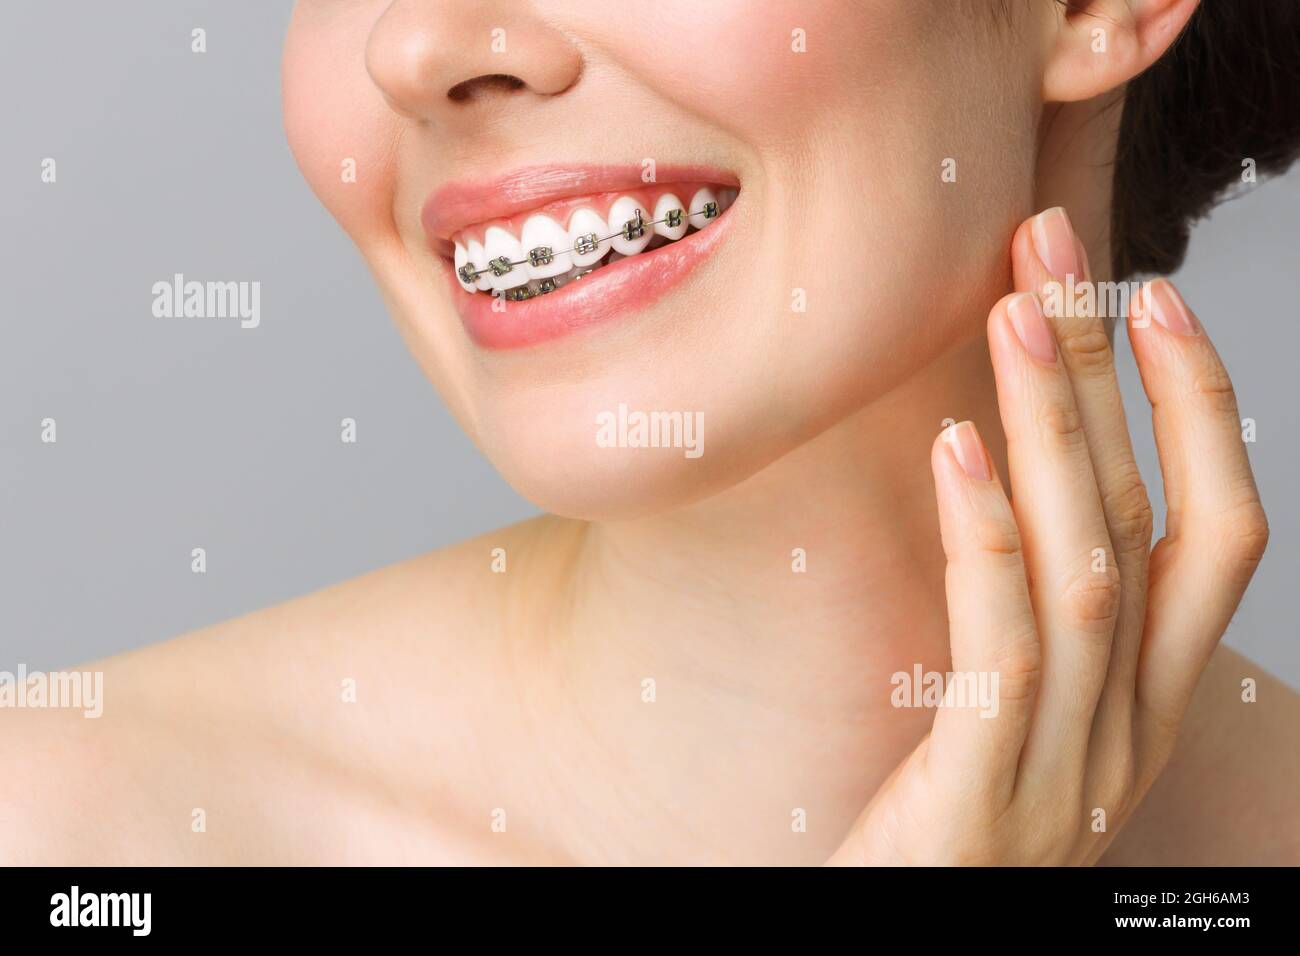 Kieferorthopädische Zahnpflege Konzept. Frau gesund Lächeln Nahaufnahme. Nahaufnahme Keramik- und Metallhalterungen an den Zähnen. Schönes Lächeln mit Zahnspangen. Stockfoto